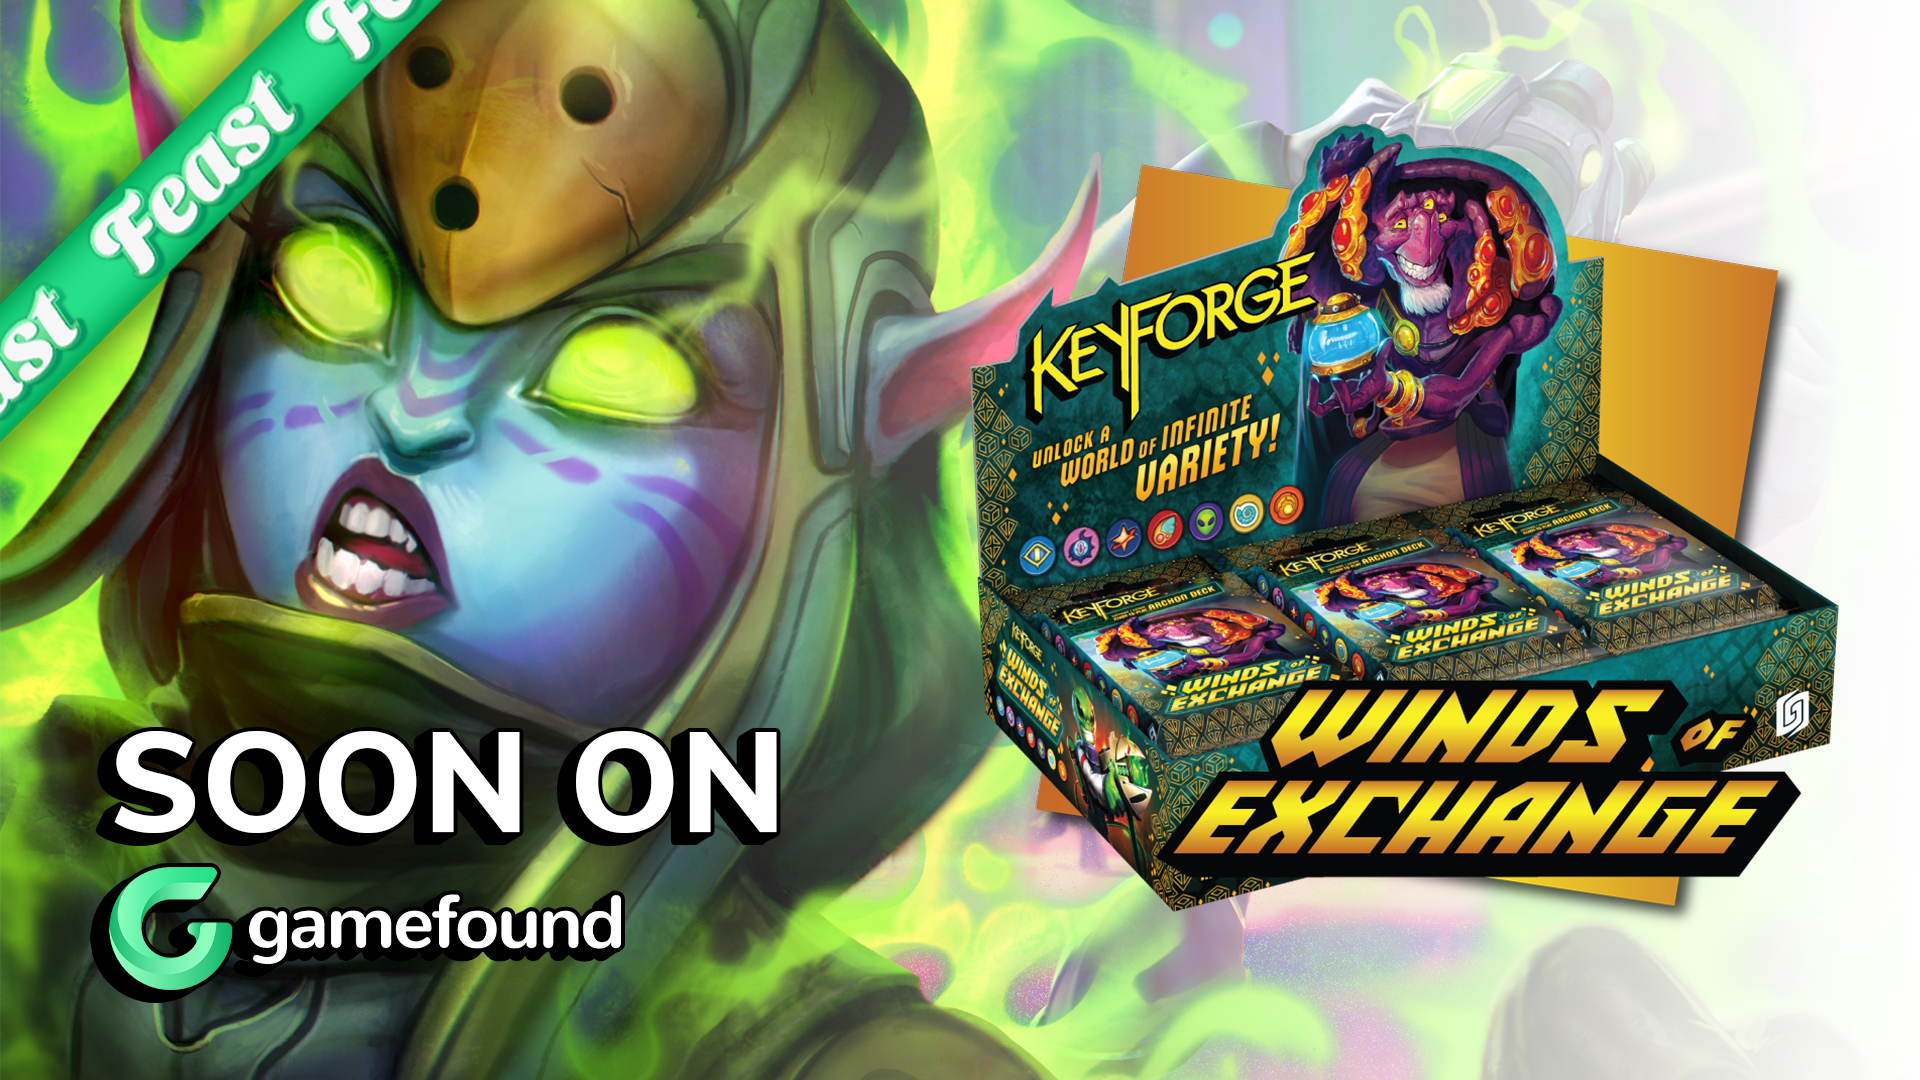 Check Keyforge: Winds of Exchange on Gamefound